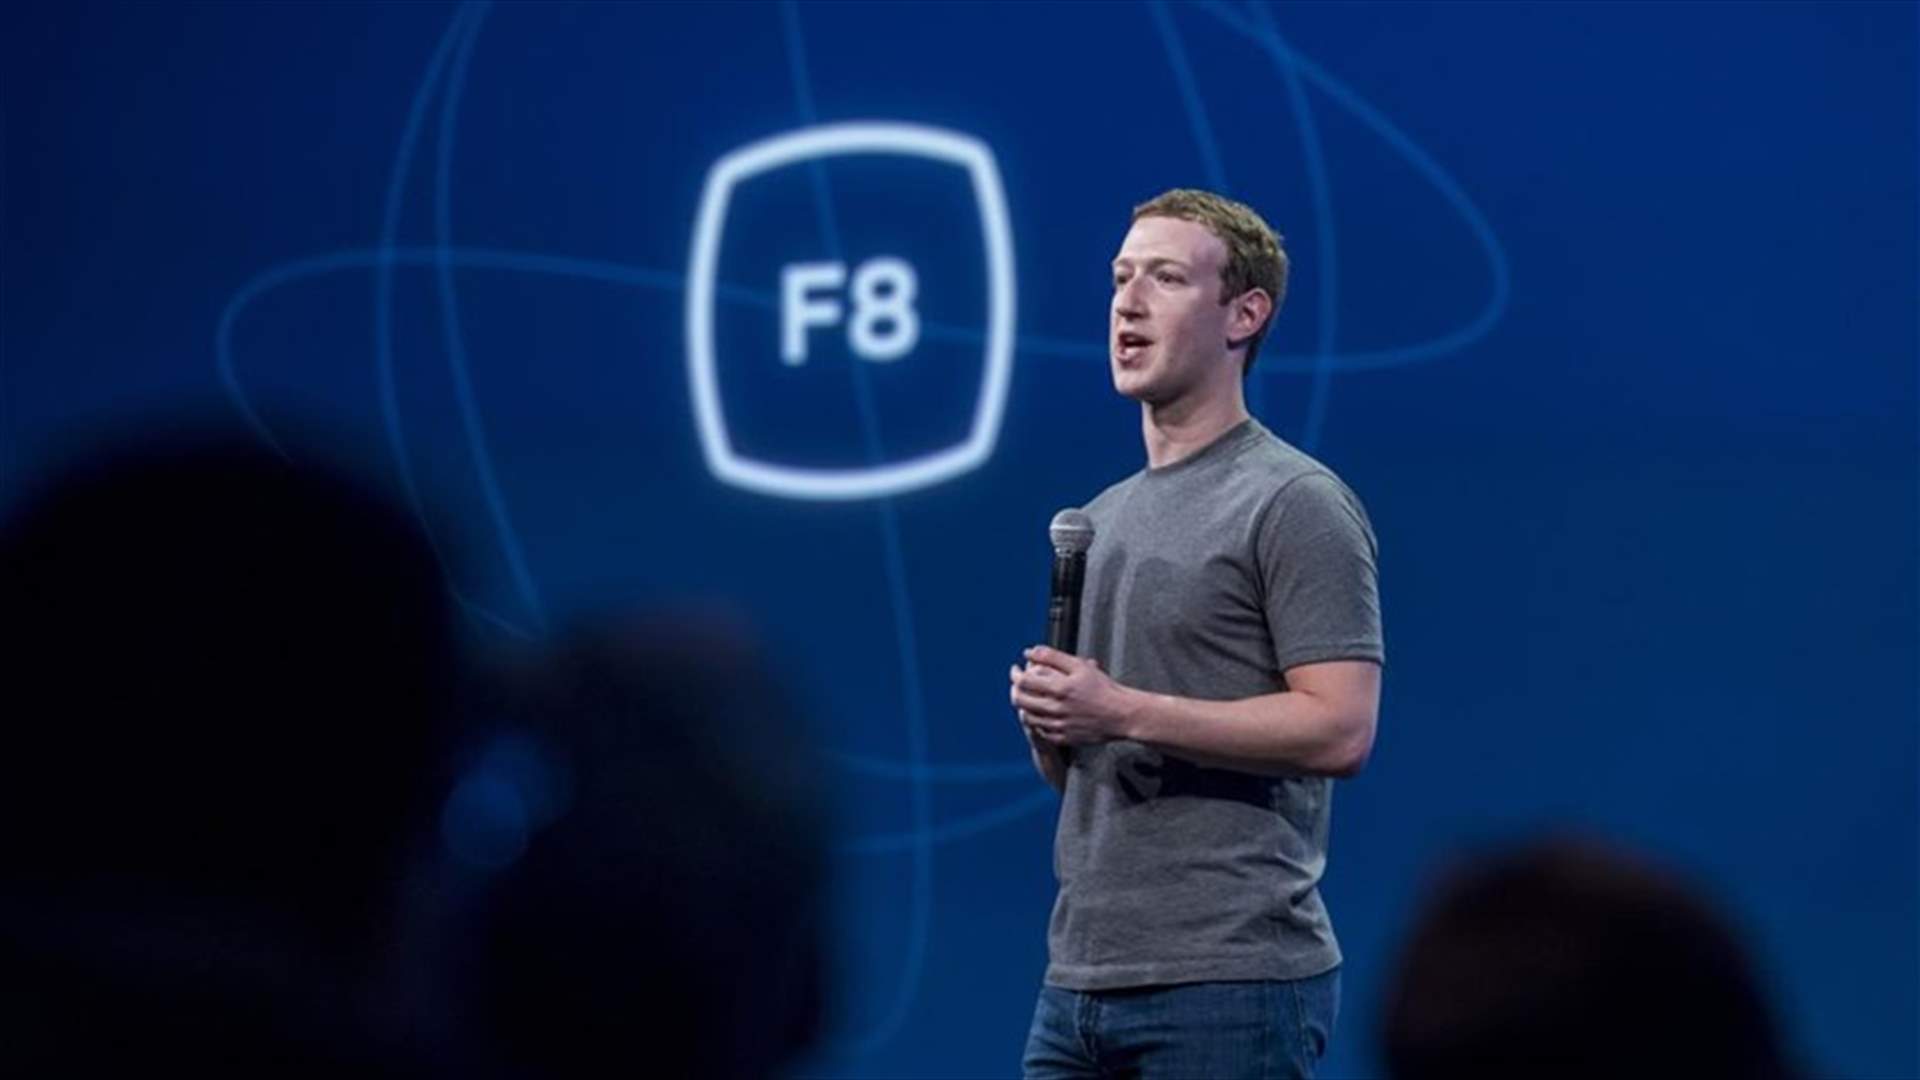 ما هي المبالغ التي تُصرف لحماية مؤسس فيسبوك؟